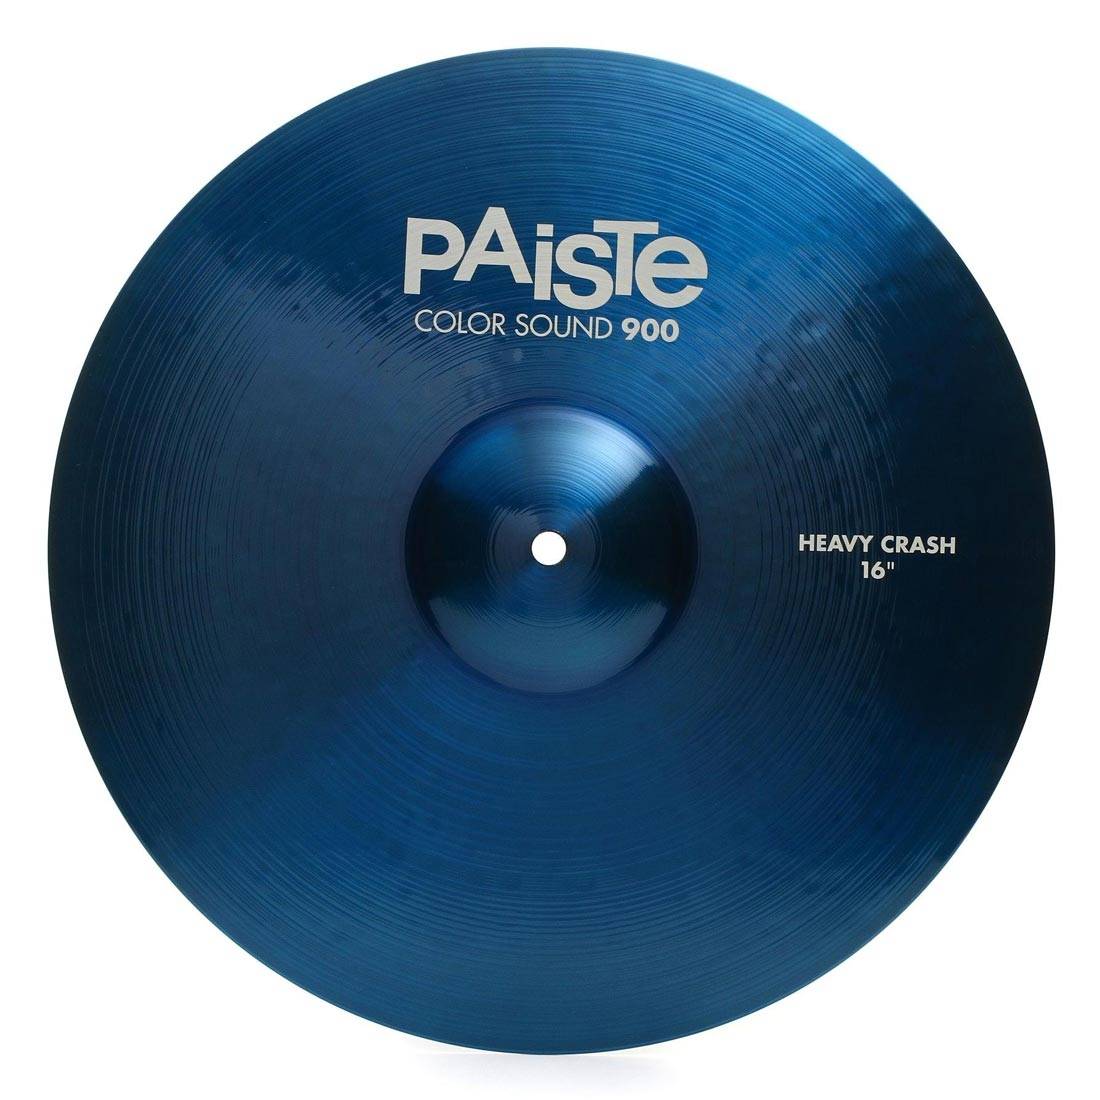 PAISTE 900 Color Sound 16'' Blue Heavy Crash